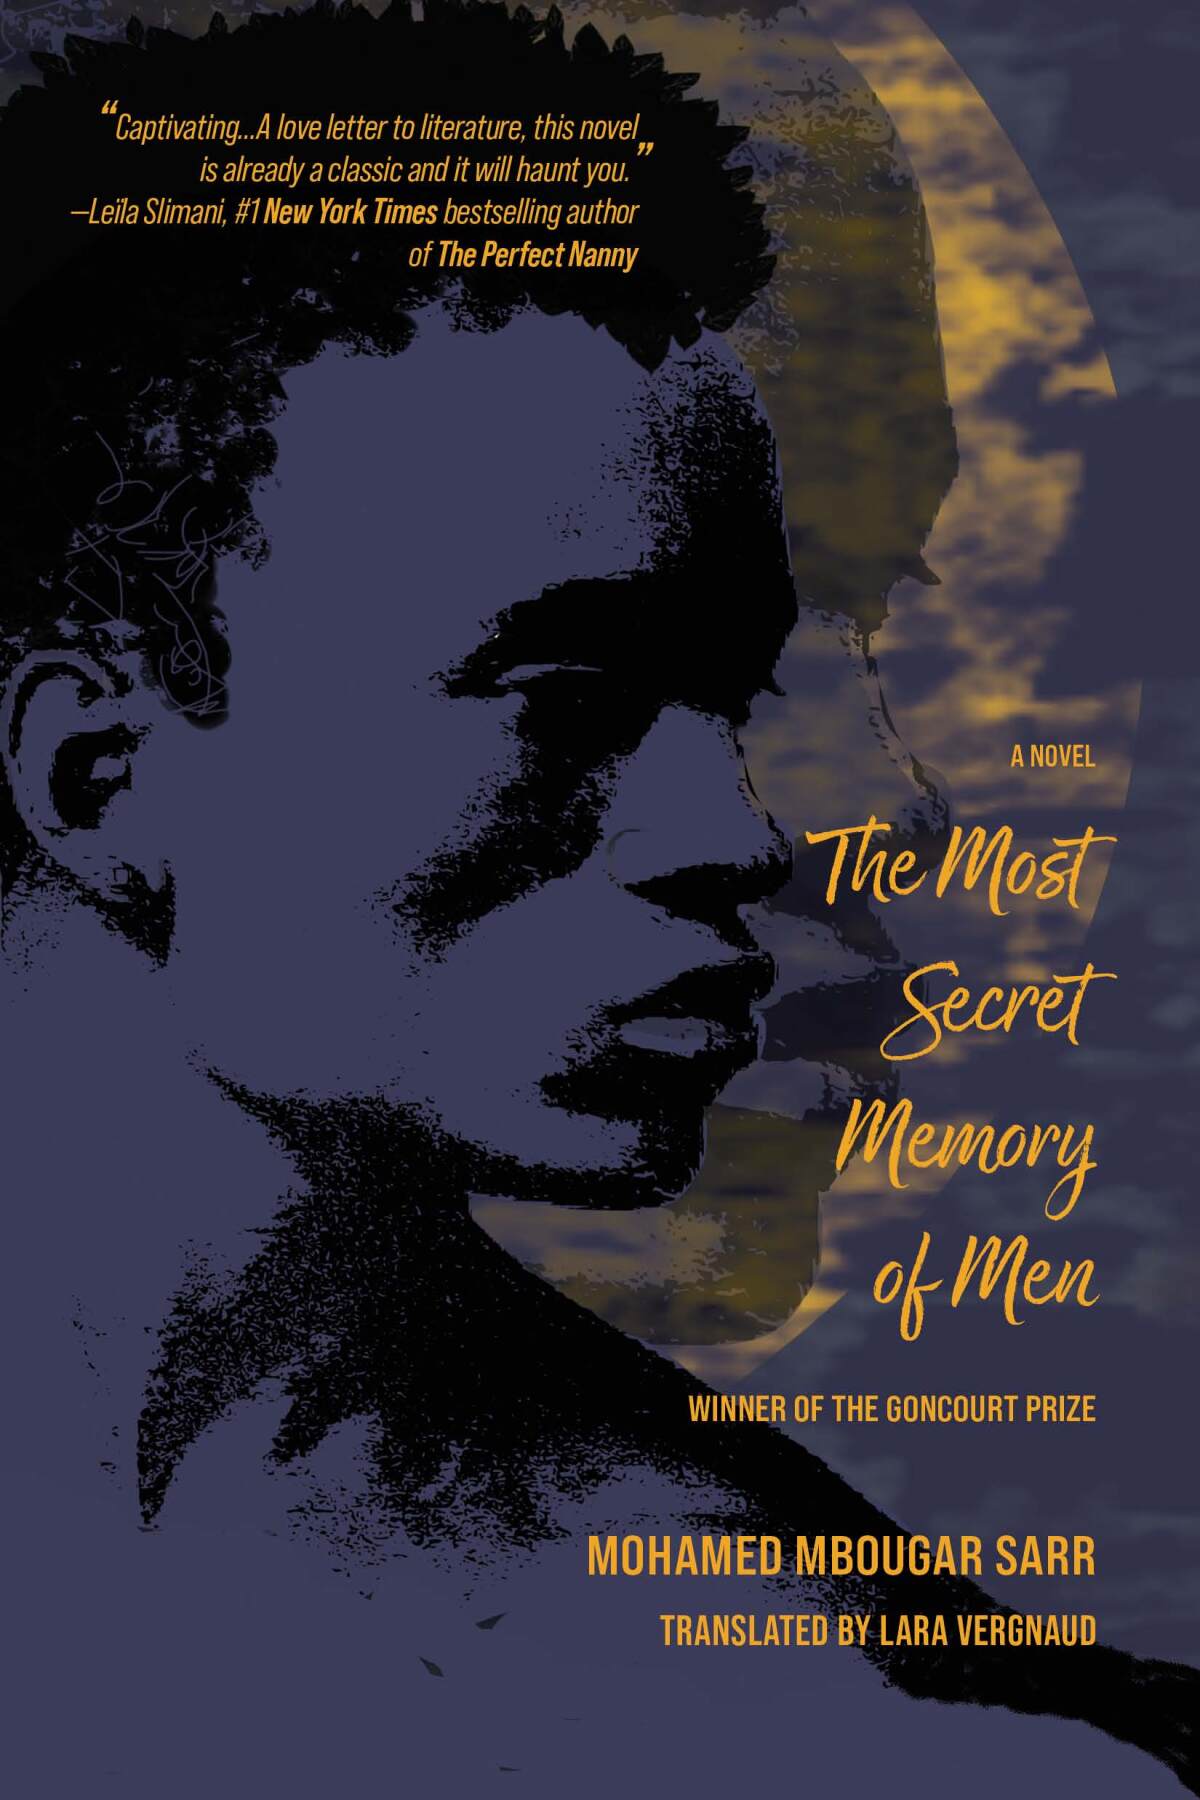 "The Most Secret Memory of Men," by Mohamed Mbougar Sarr